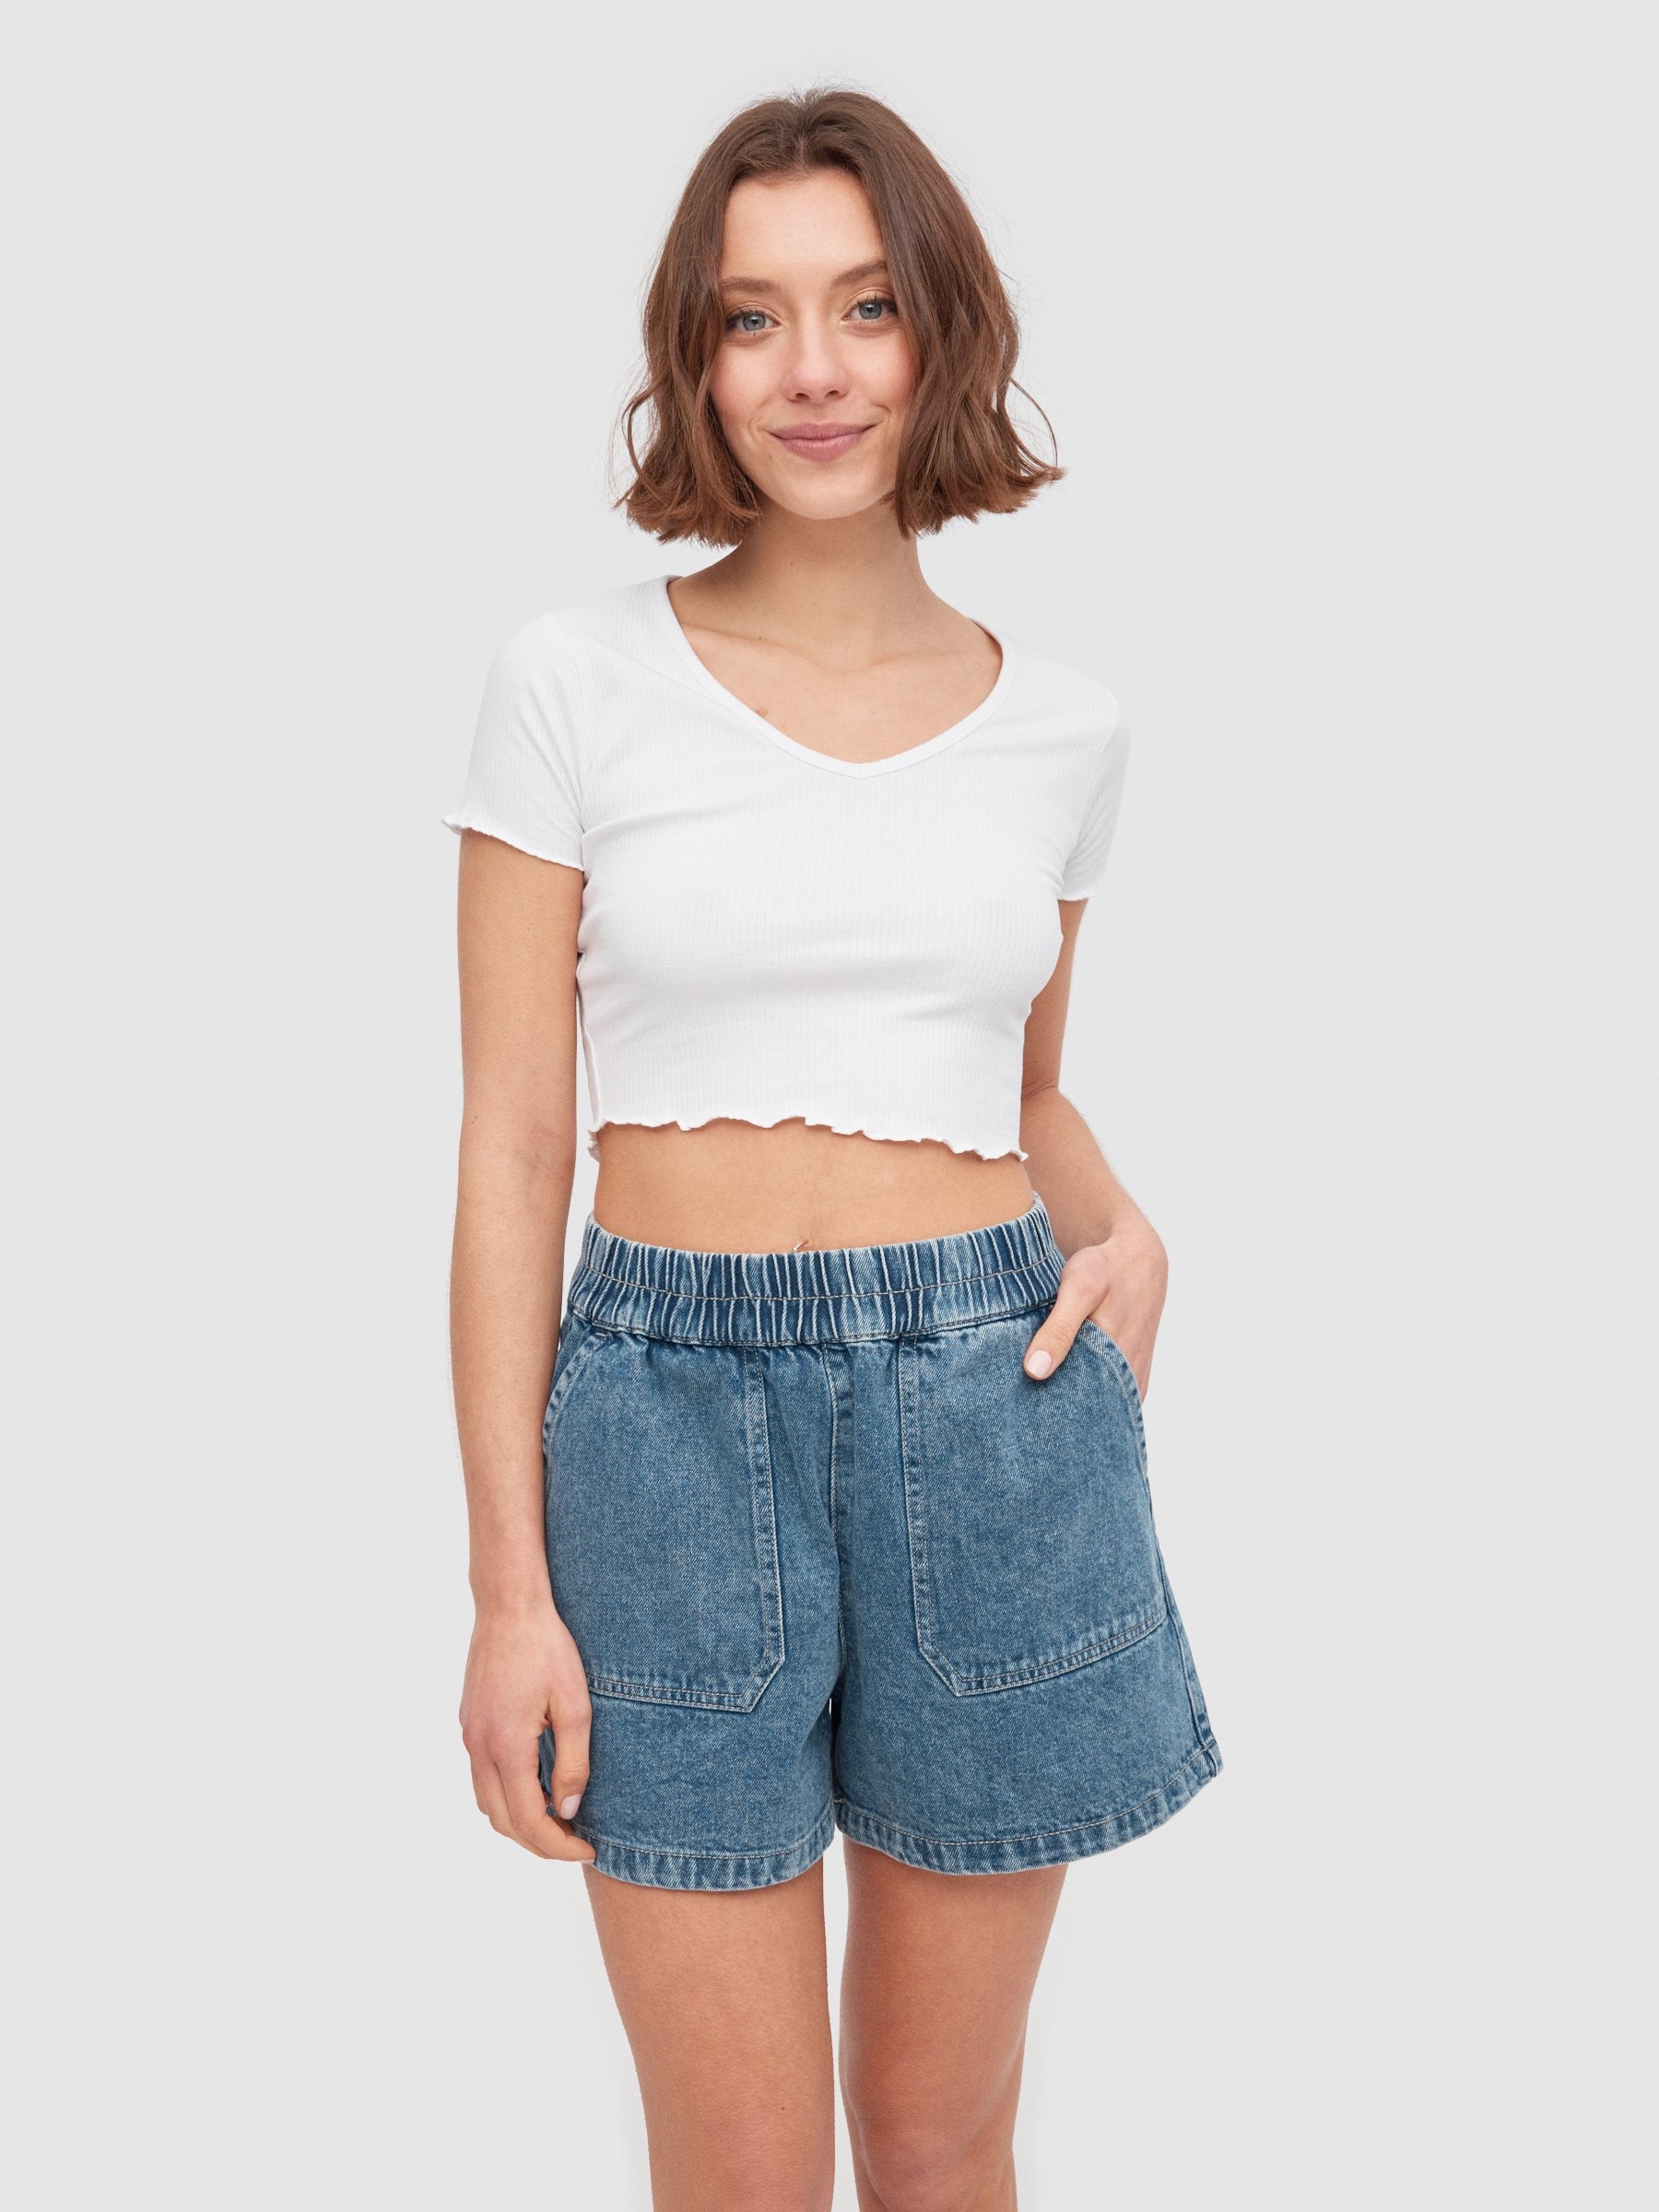 Comprar Shorts Mujer, Pantalones Cortos Chica